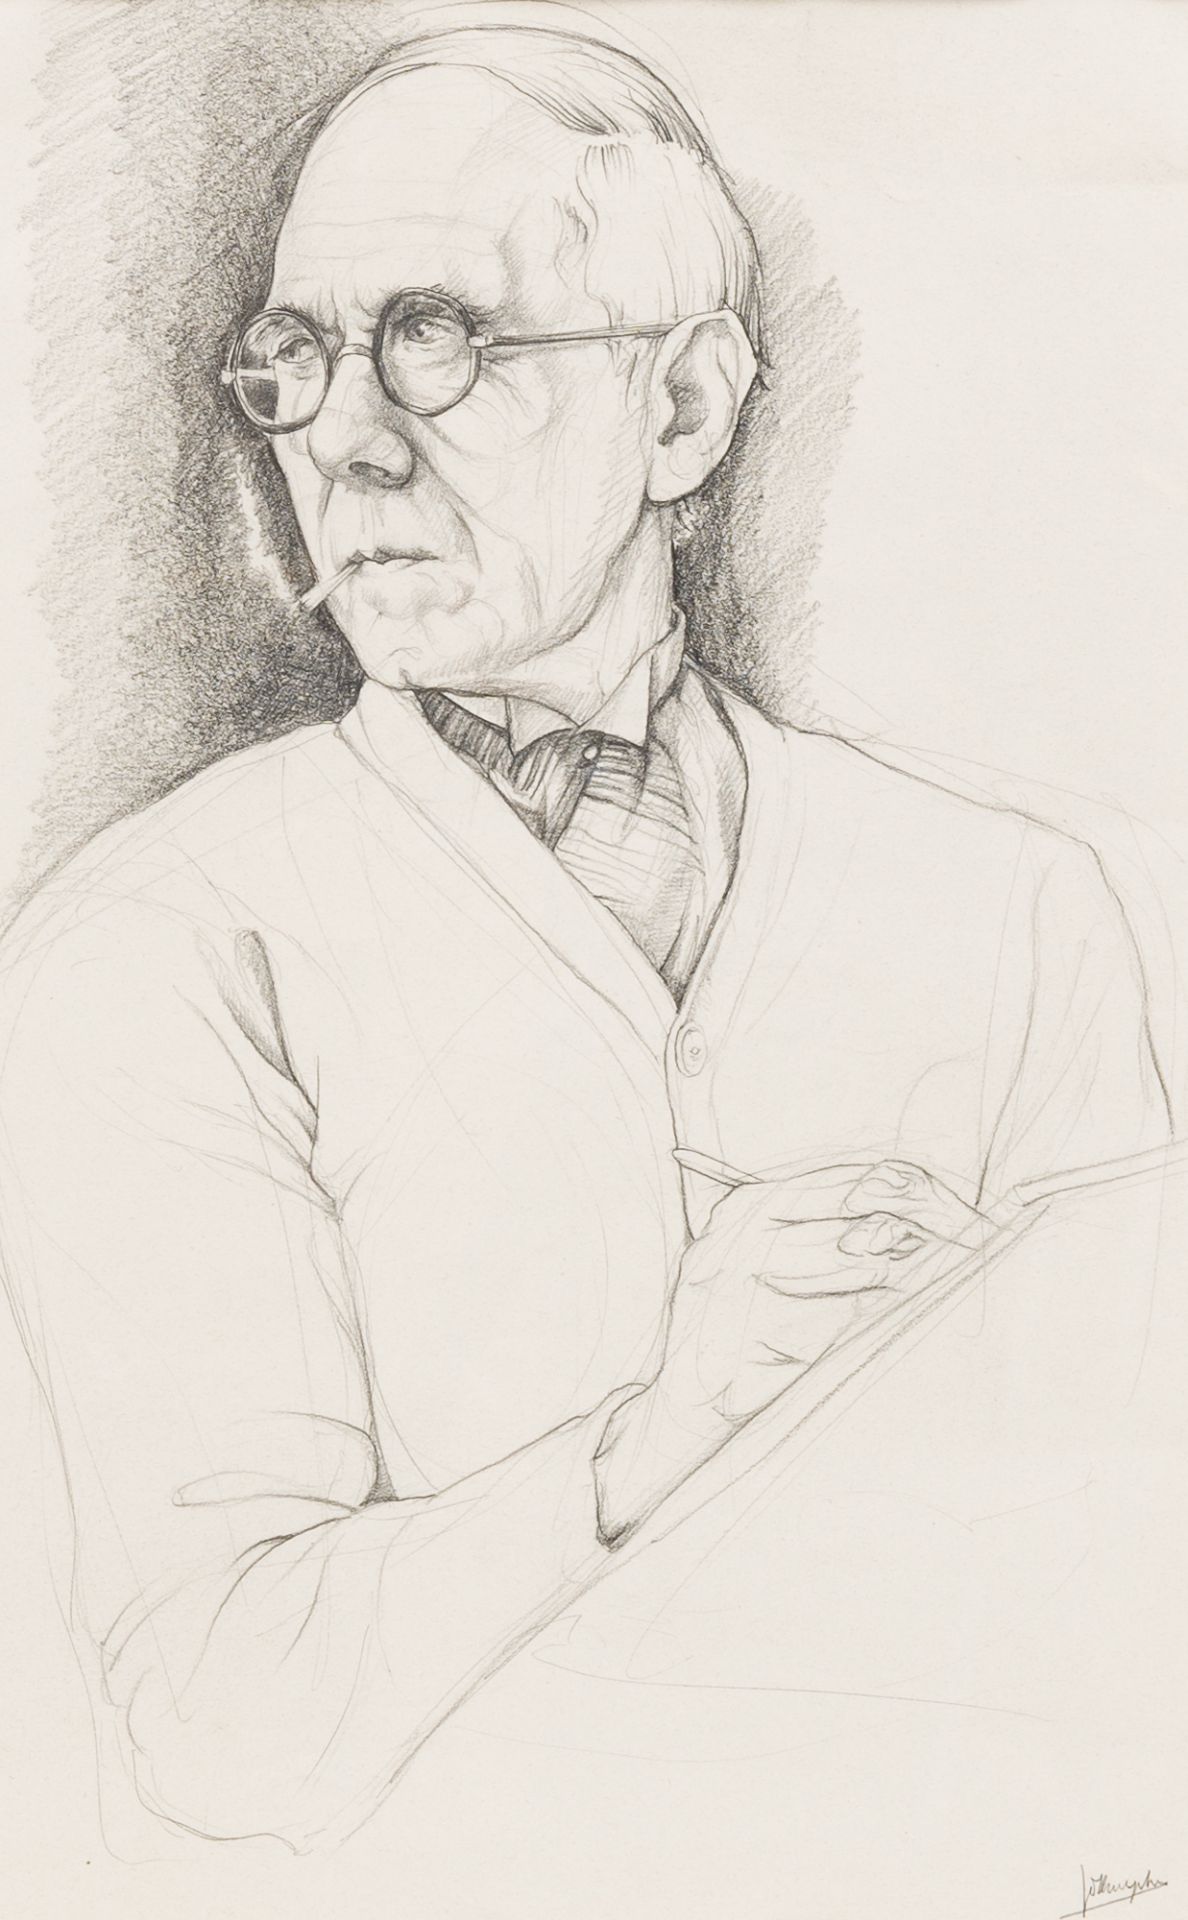 Jules De Bruycker (1870-1945): Self-portrait, pencil on paper